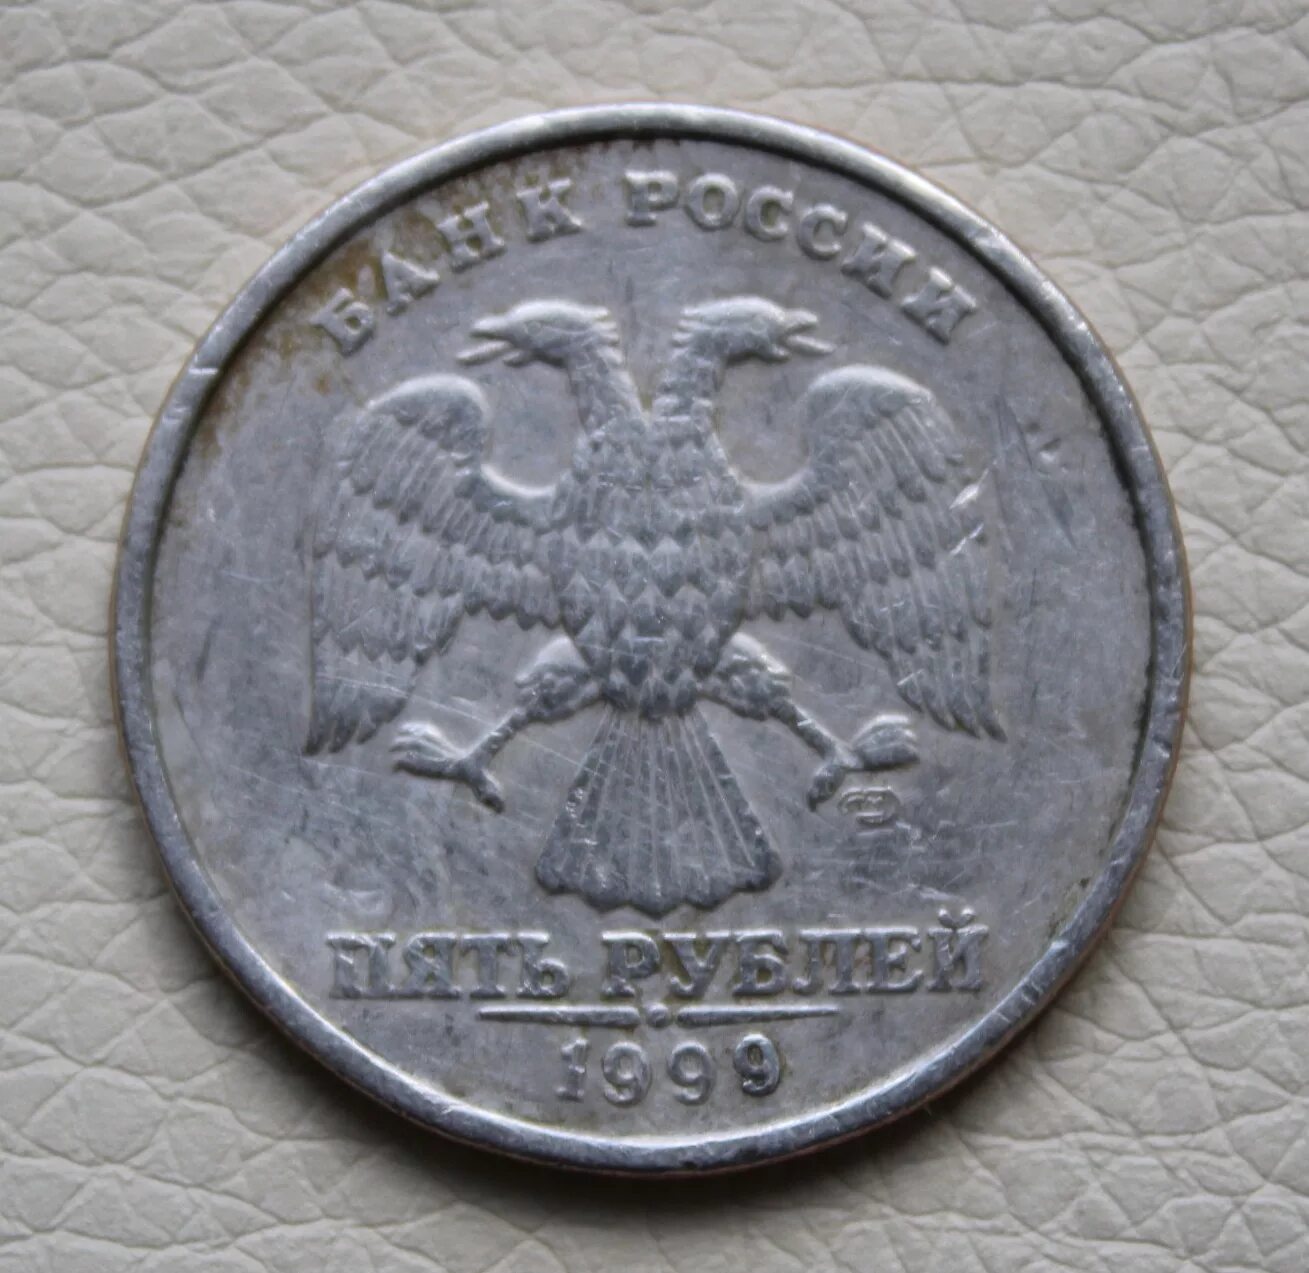 5 Рублей 1999 СПМД. 5 Рублей, 1999 г, СПМД. 5 Рублей 1999 года СПМД. 5 Рублей 1999 года Санкт-Петербургского монетного двора.